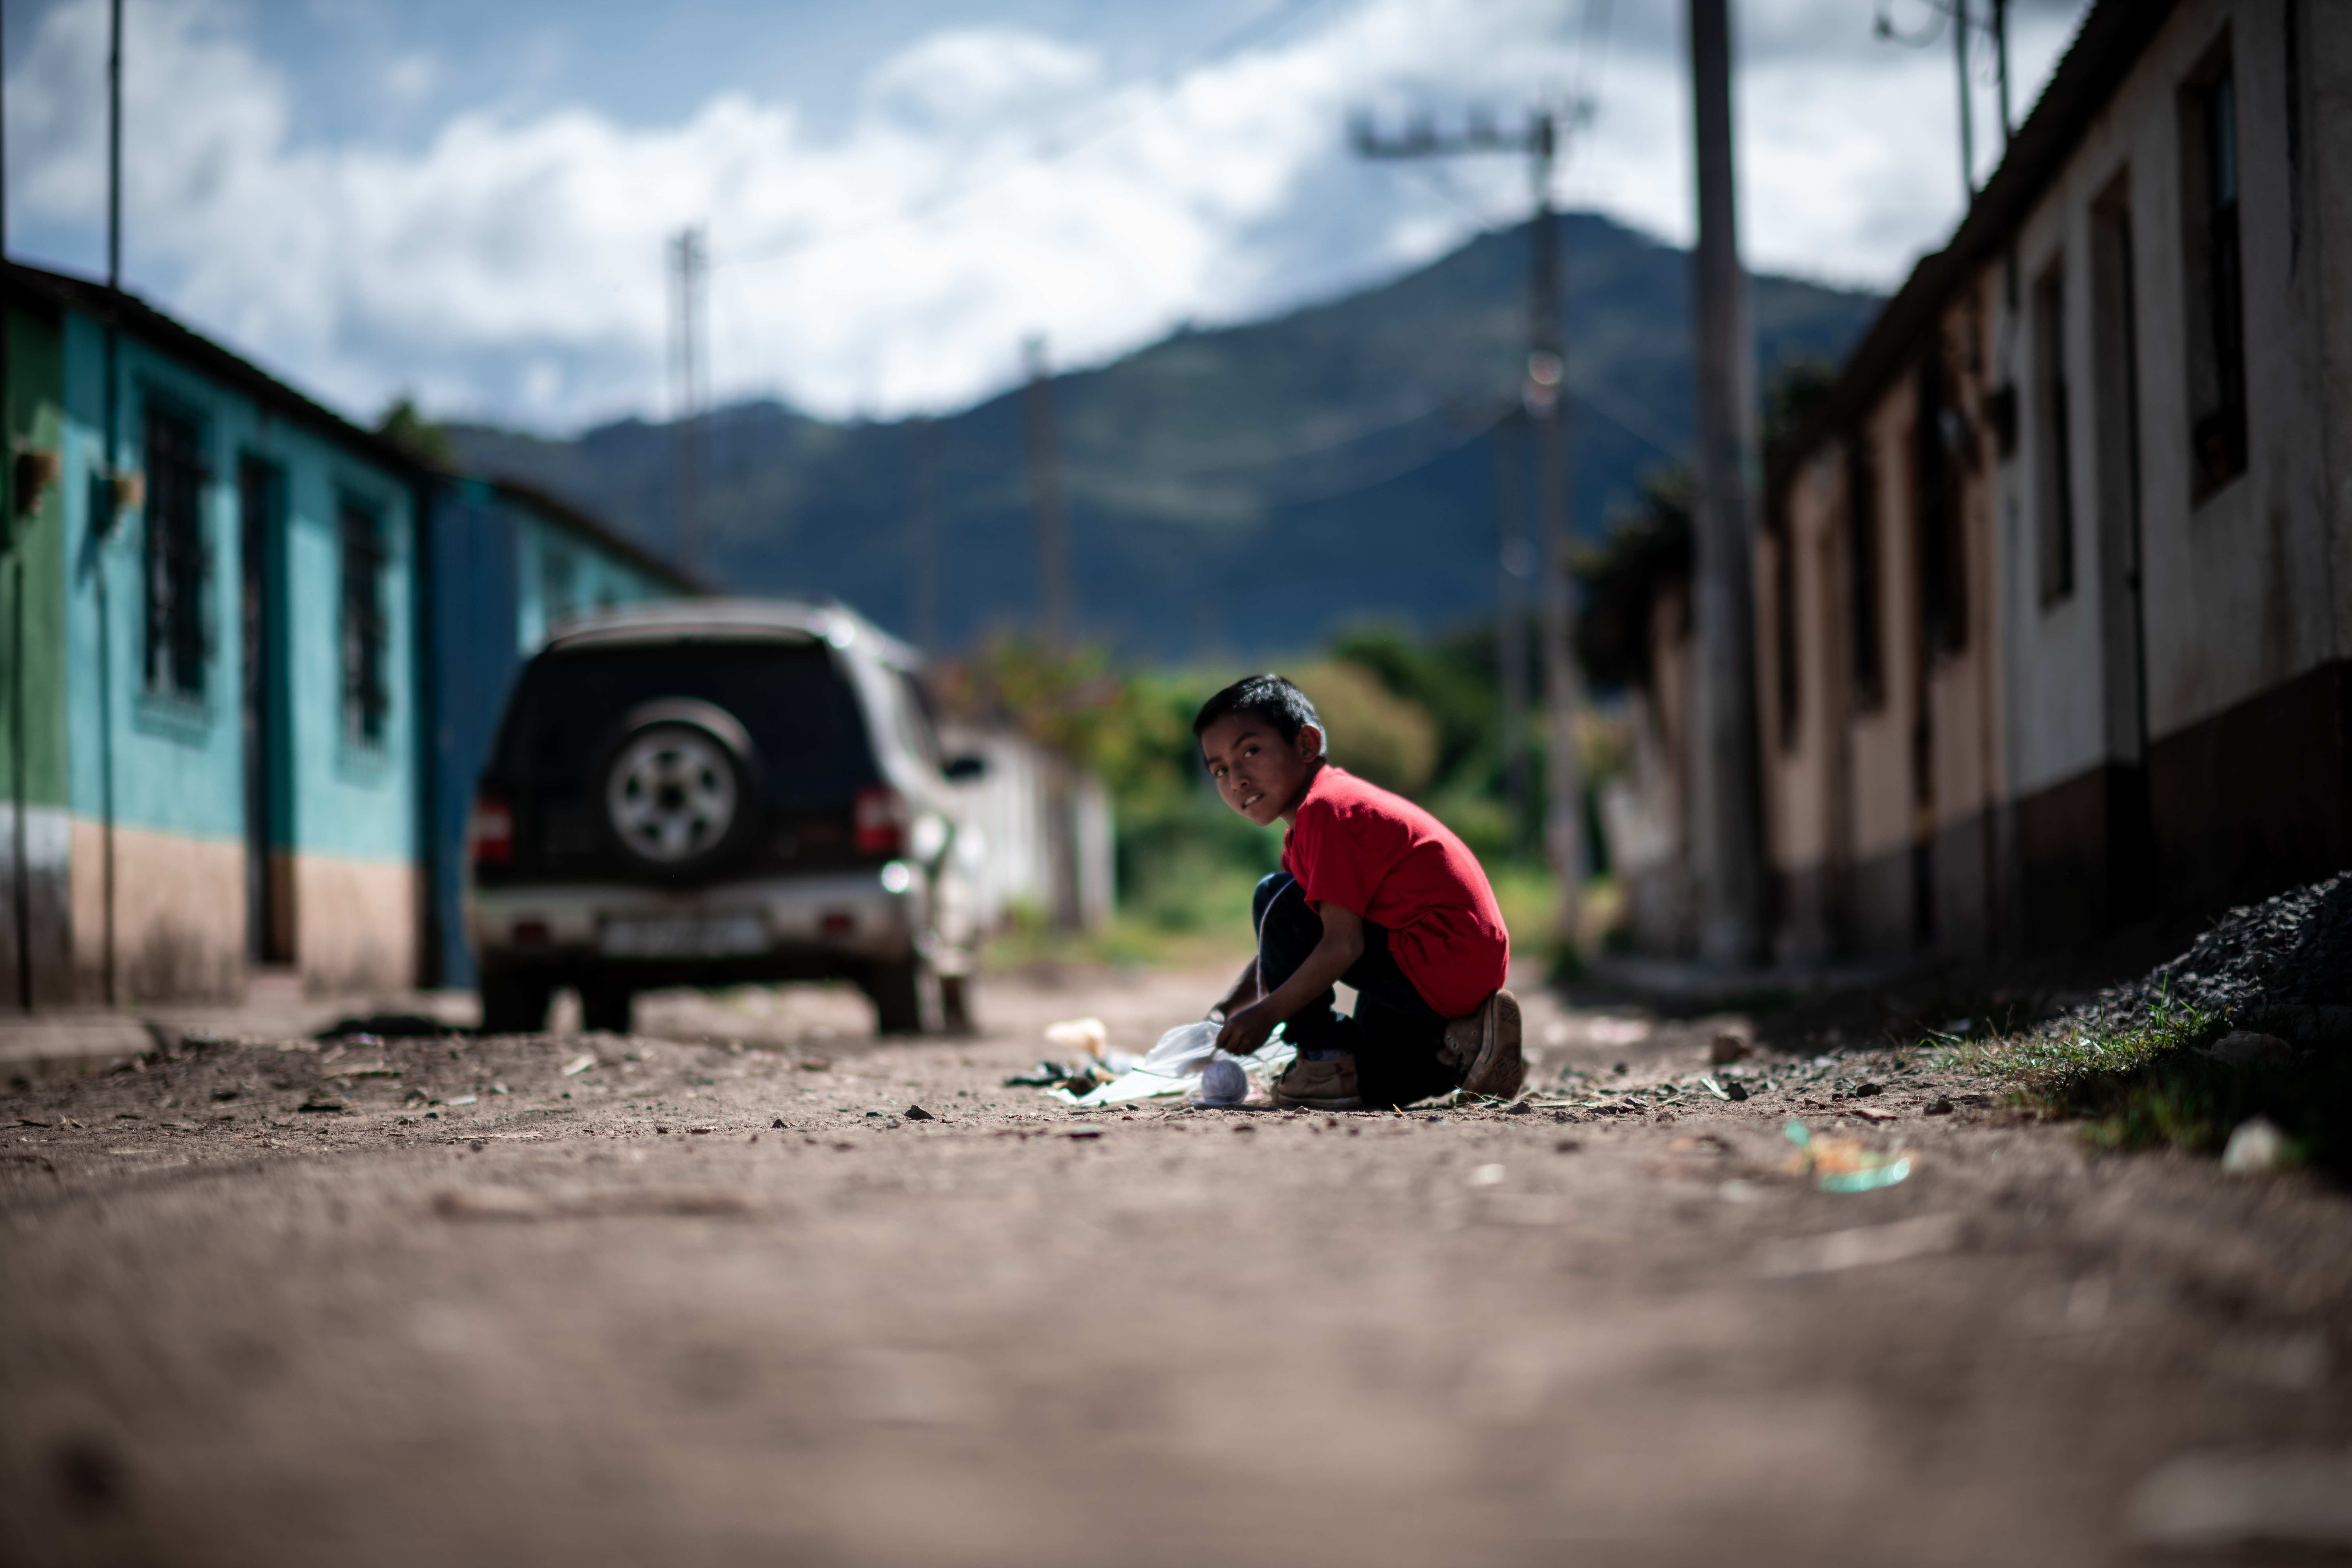 Juan aus Guatemala kniet auf einer Straße (Quelle: Fabian Strauch / FUNKE Foto Services GmbH)